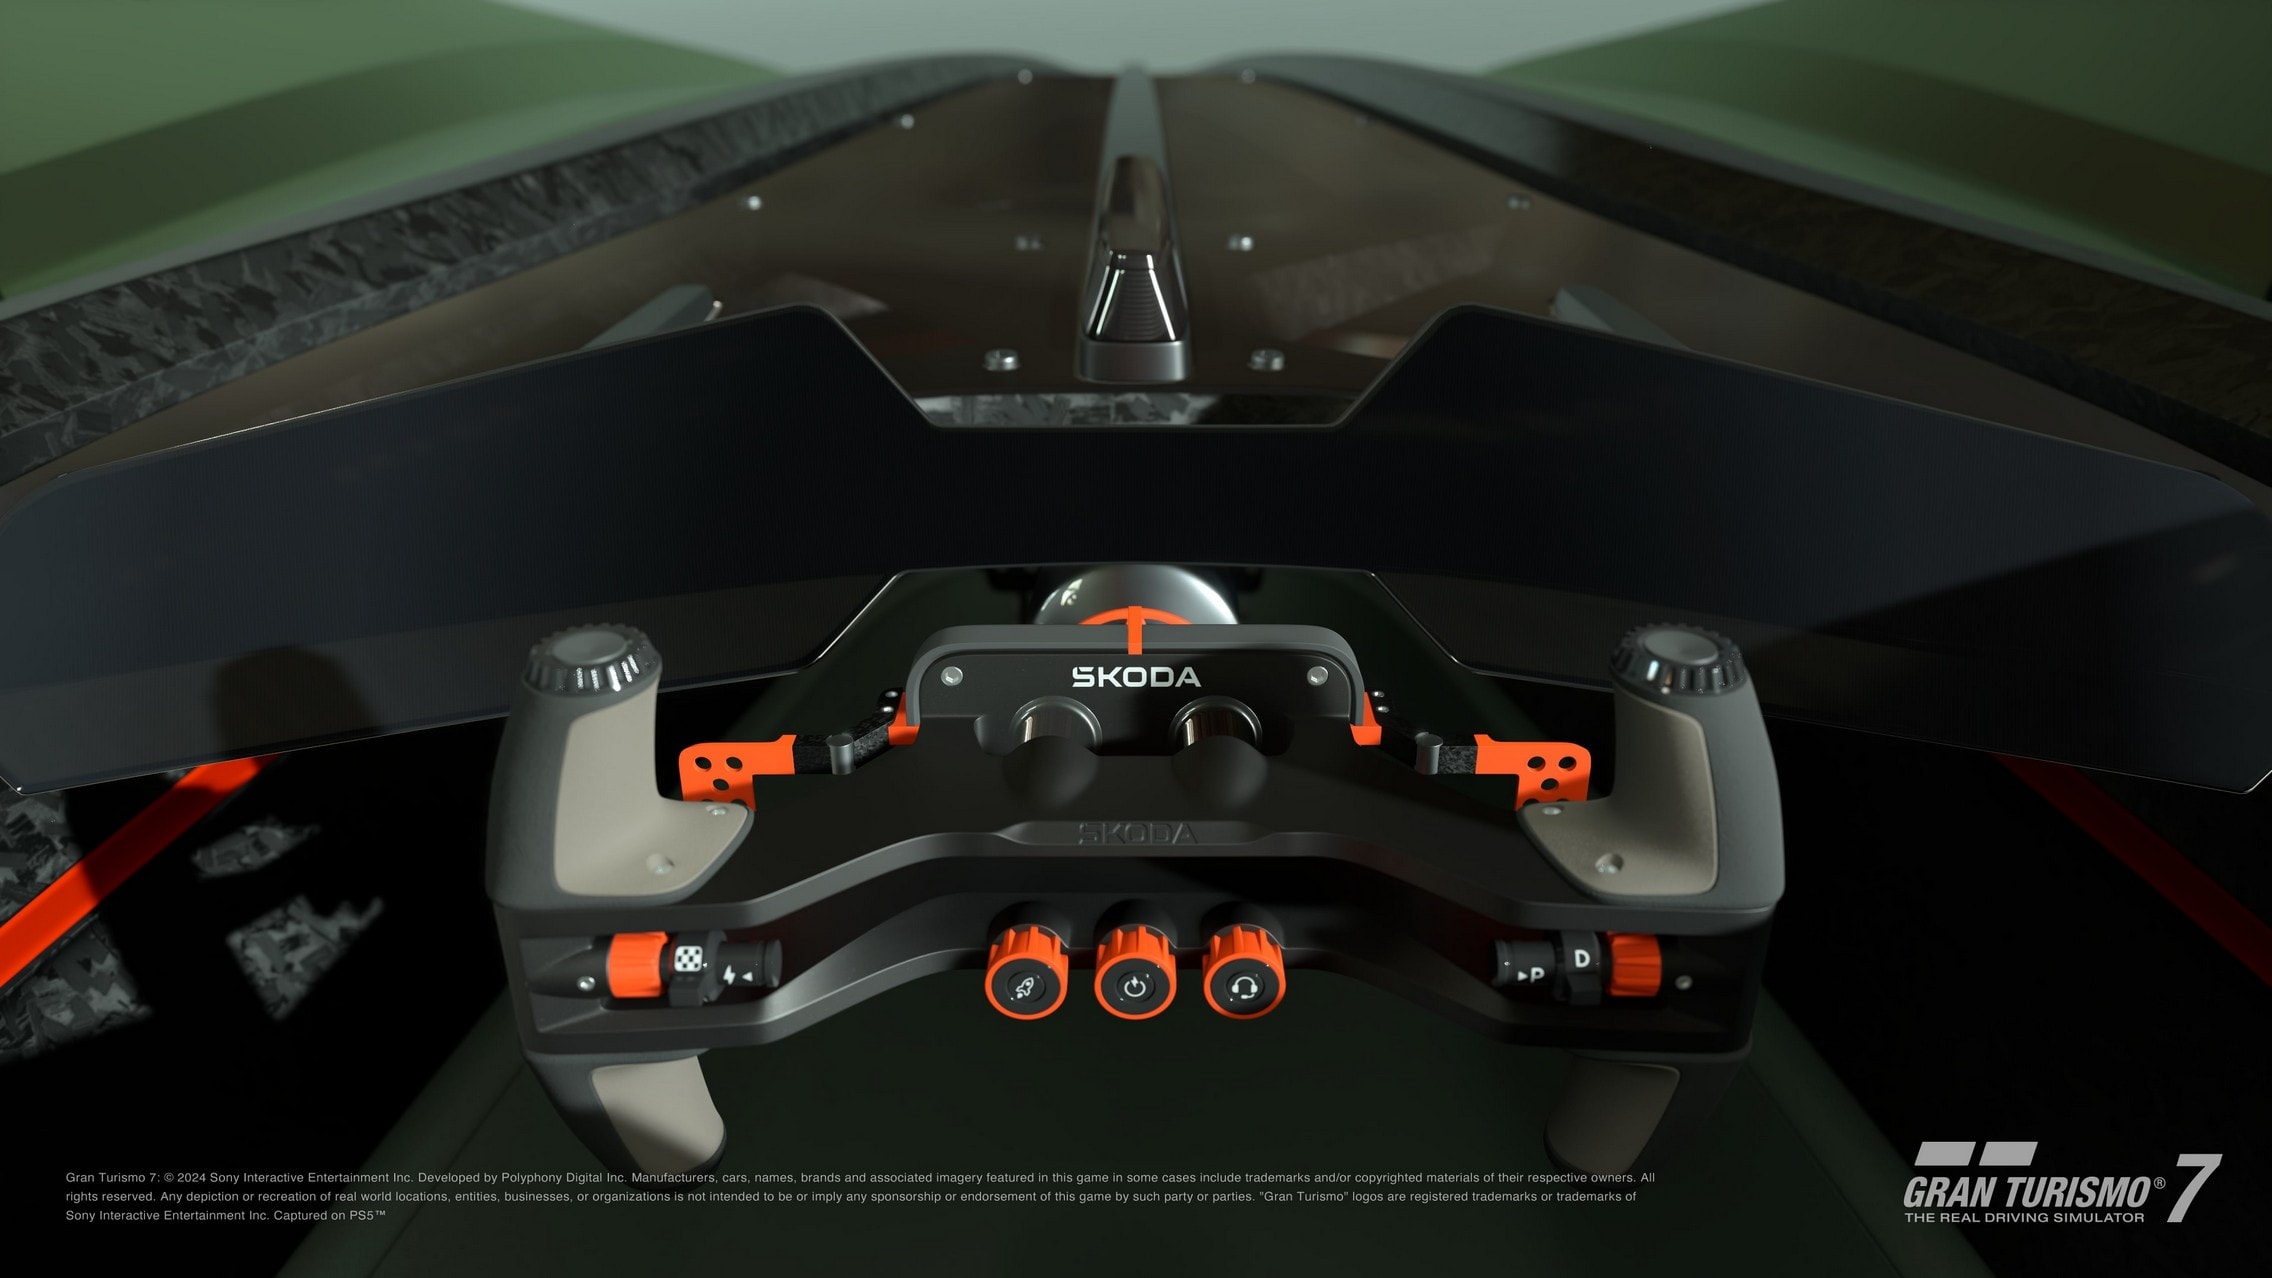 Skoda's Vision Gran Turismo Concept